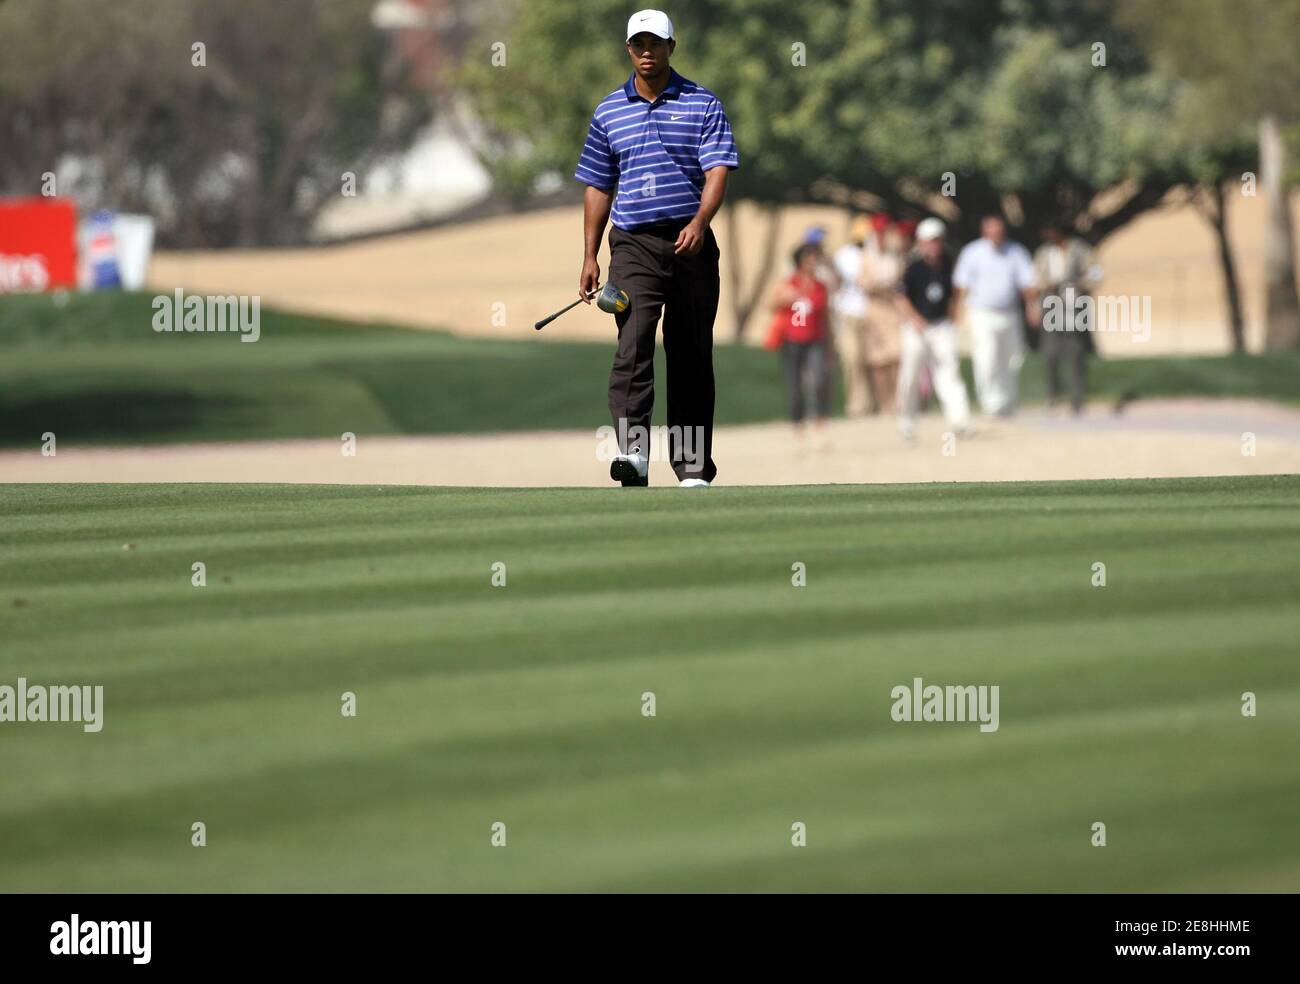 Tiger Woods der USA geht auf dem Fairway von Loch 3 während der dritten Runde der Dubai Desert Classic Golfturnier am 4. Februar 2006. REUTERS/Desmond Boylan Stockfoto